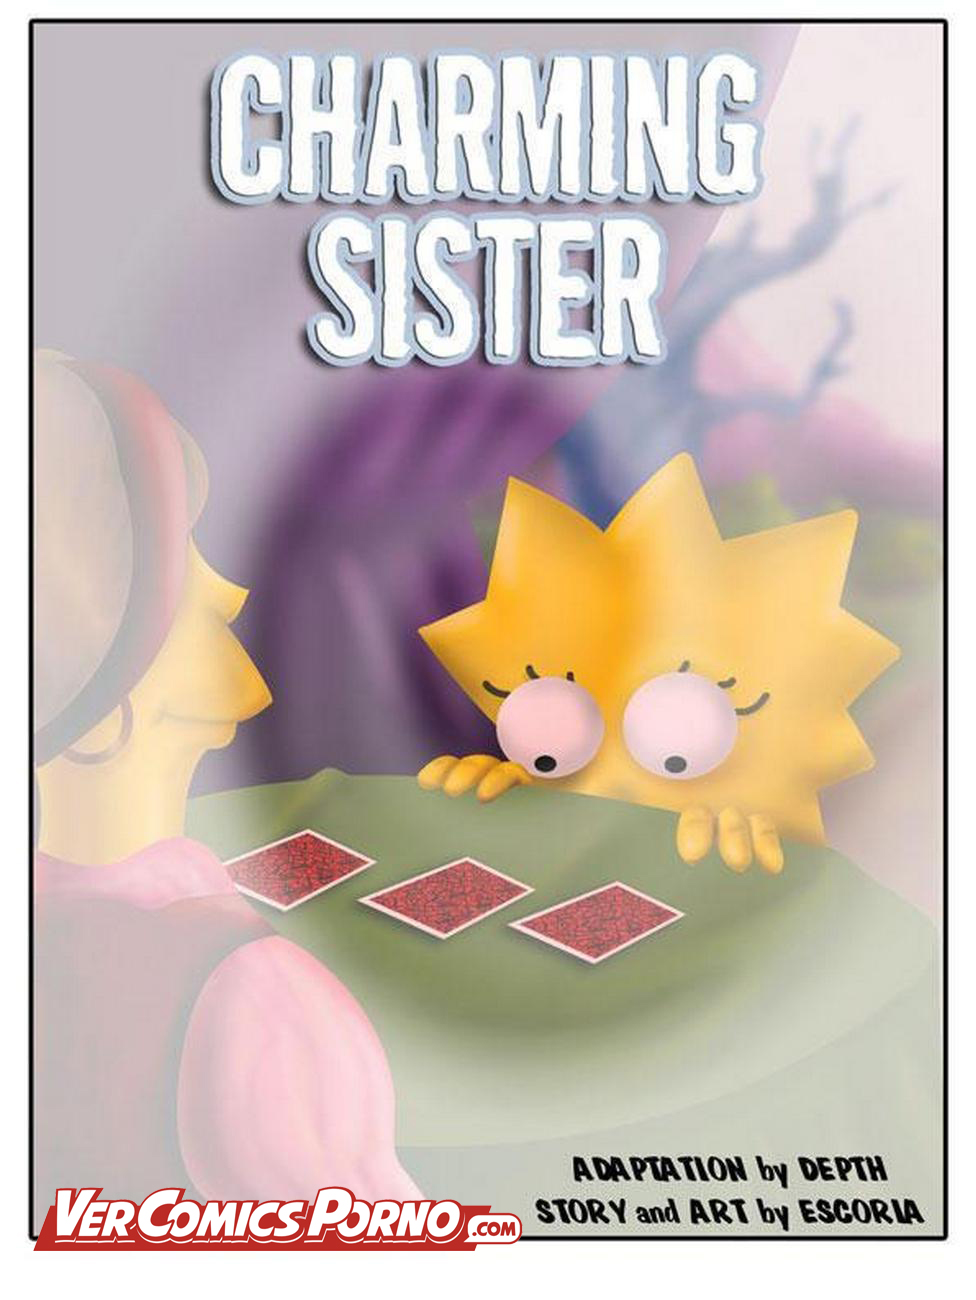 Los Simpsons: Lisa y Maggie teniendo una aventura lÃ©sbica - Vercomicsporno